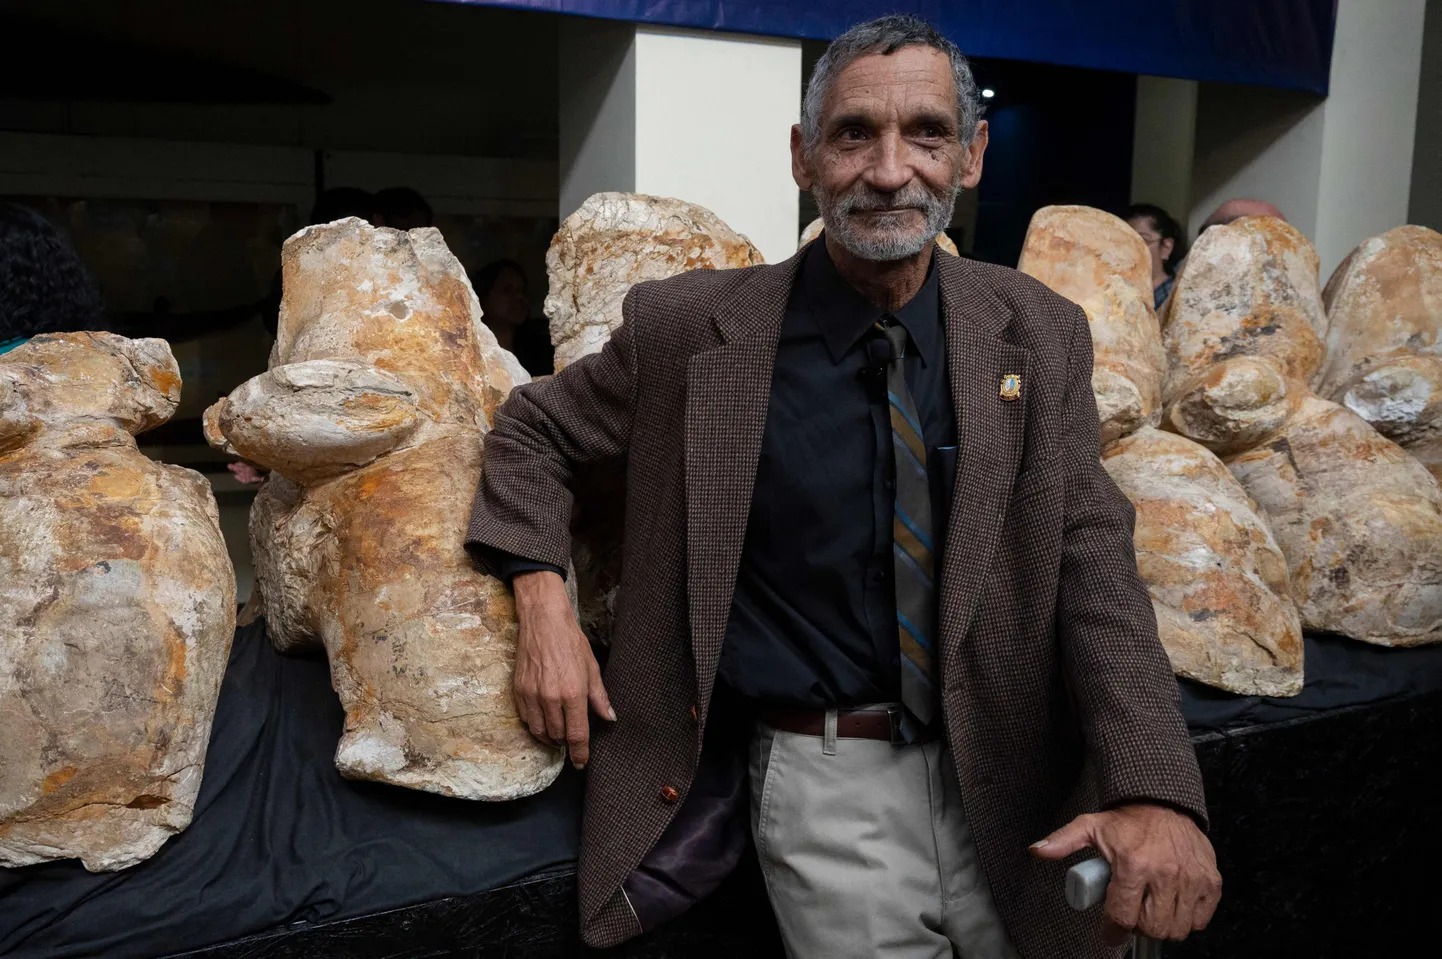 Peruu paleontoloog Mario Urbina esitles ürgvaala kivistisi avalikkusele